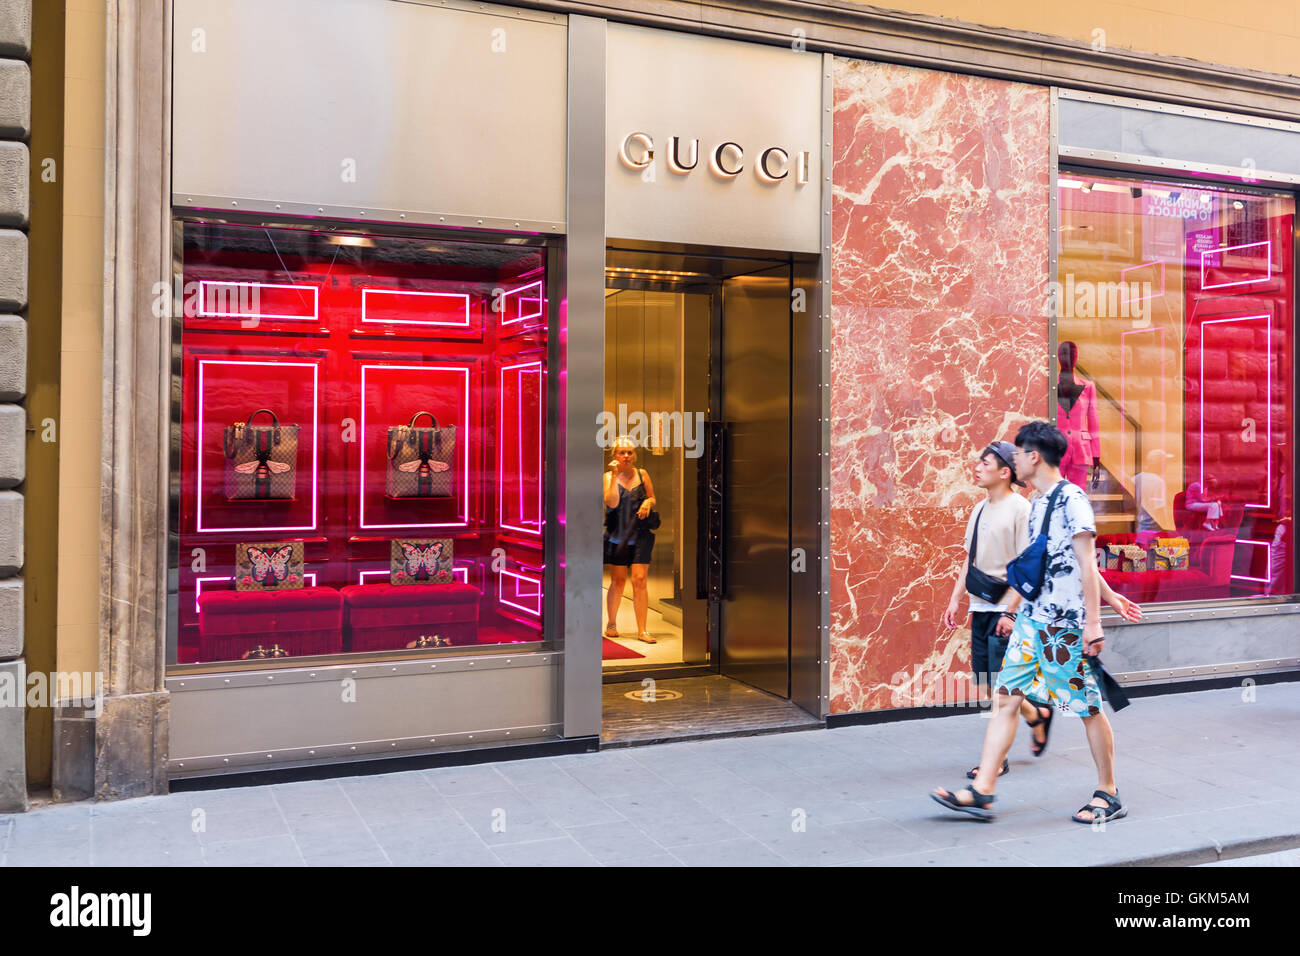 Florenz, Italien - 5. Juli 2016: Gucci-Shop in der Innenstadt von Florenz.  Florenz ist eine bekannte shopping-Standort mit einem Hallo Stockfotografie  - Alamy